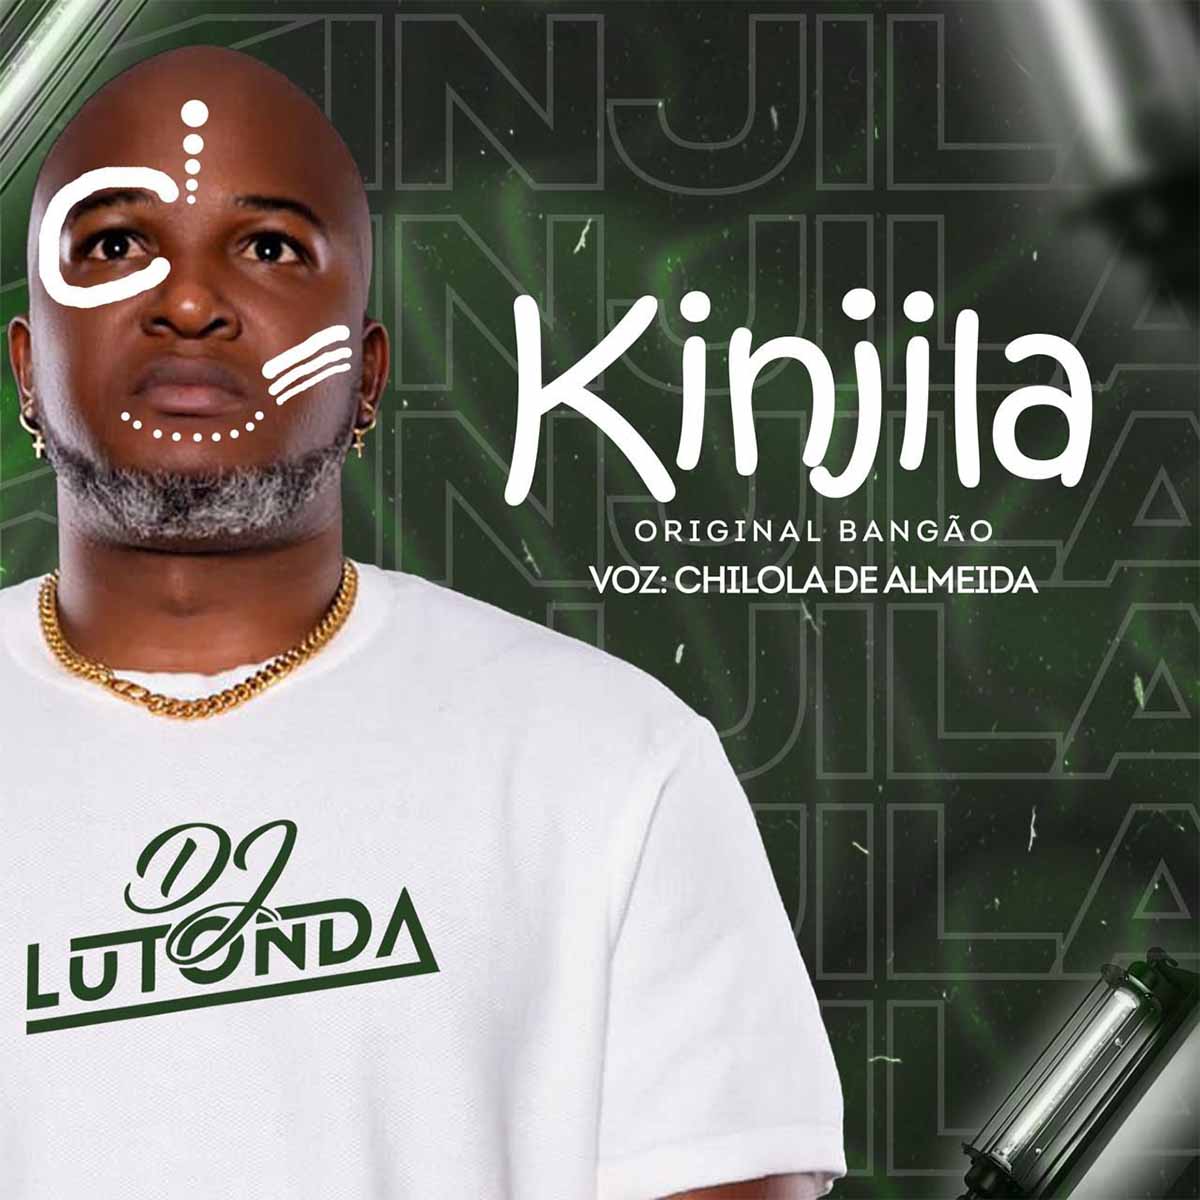 Dj Lutonda – Kinjila (Remix)